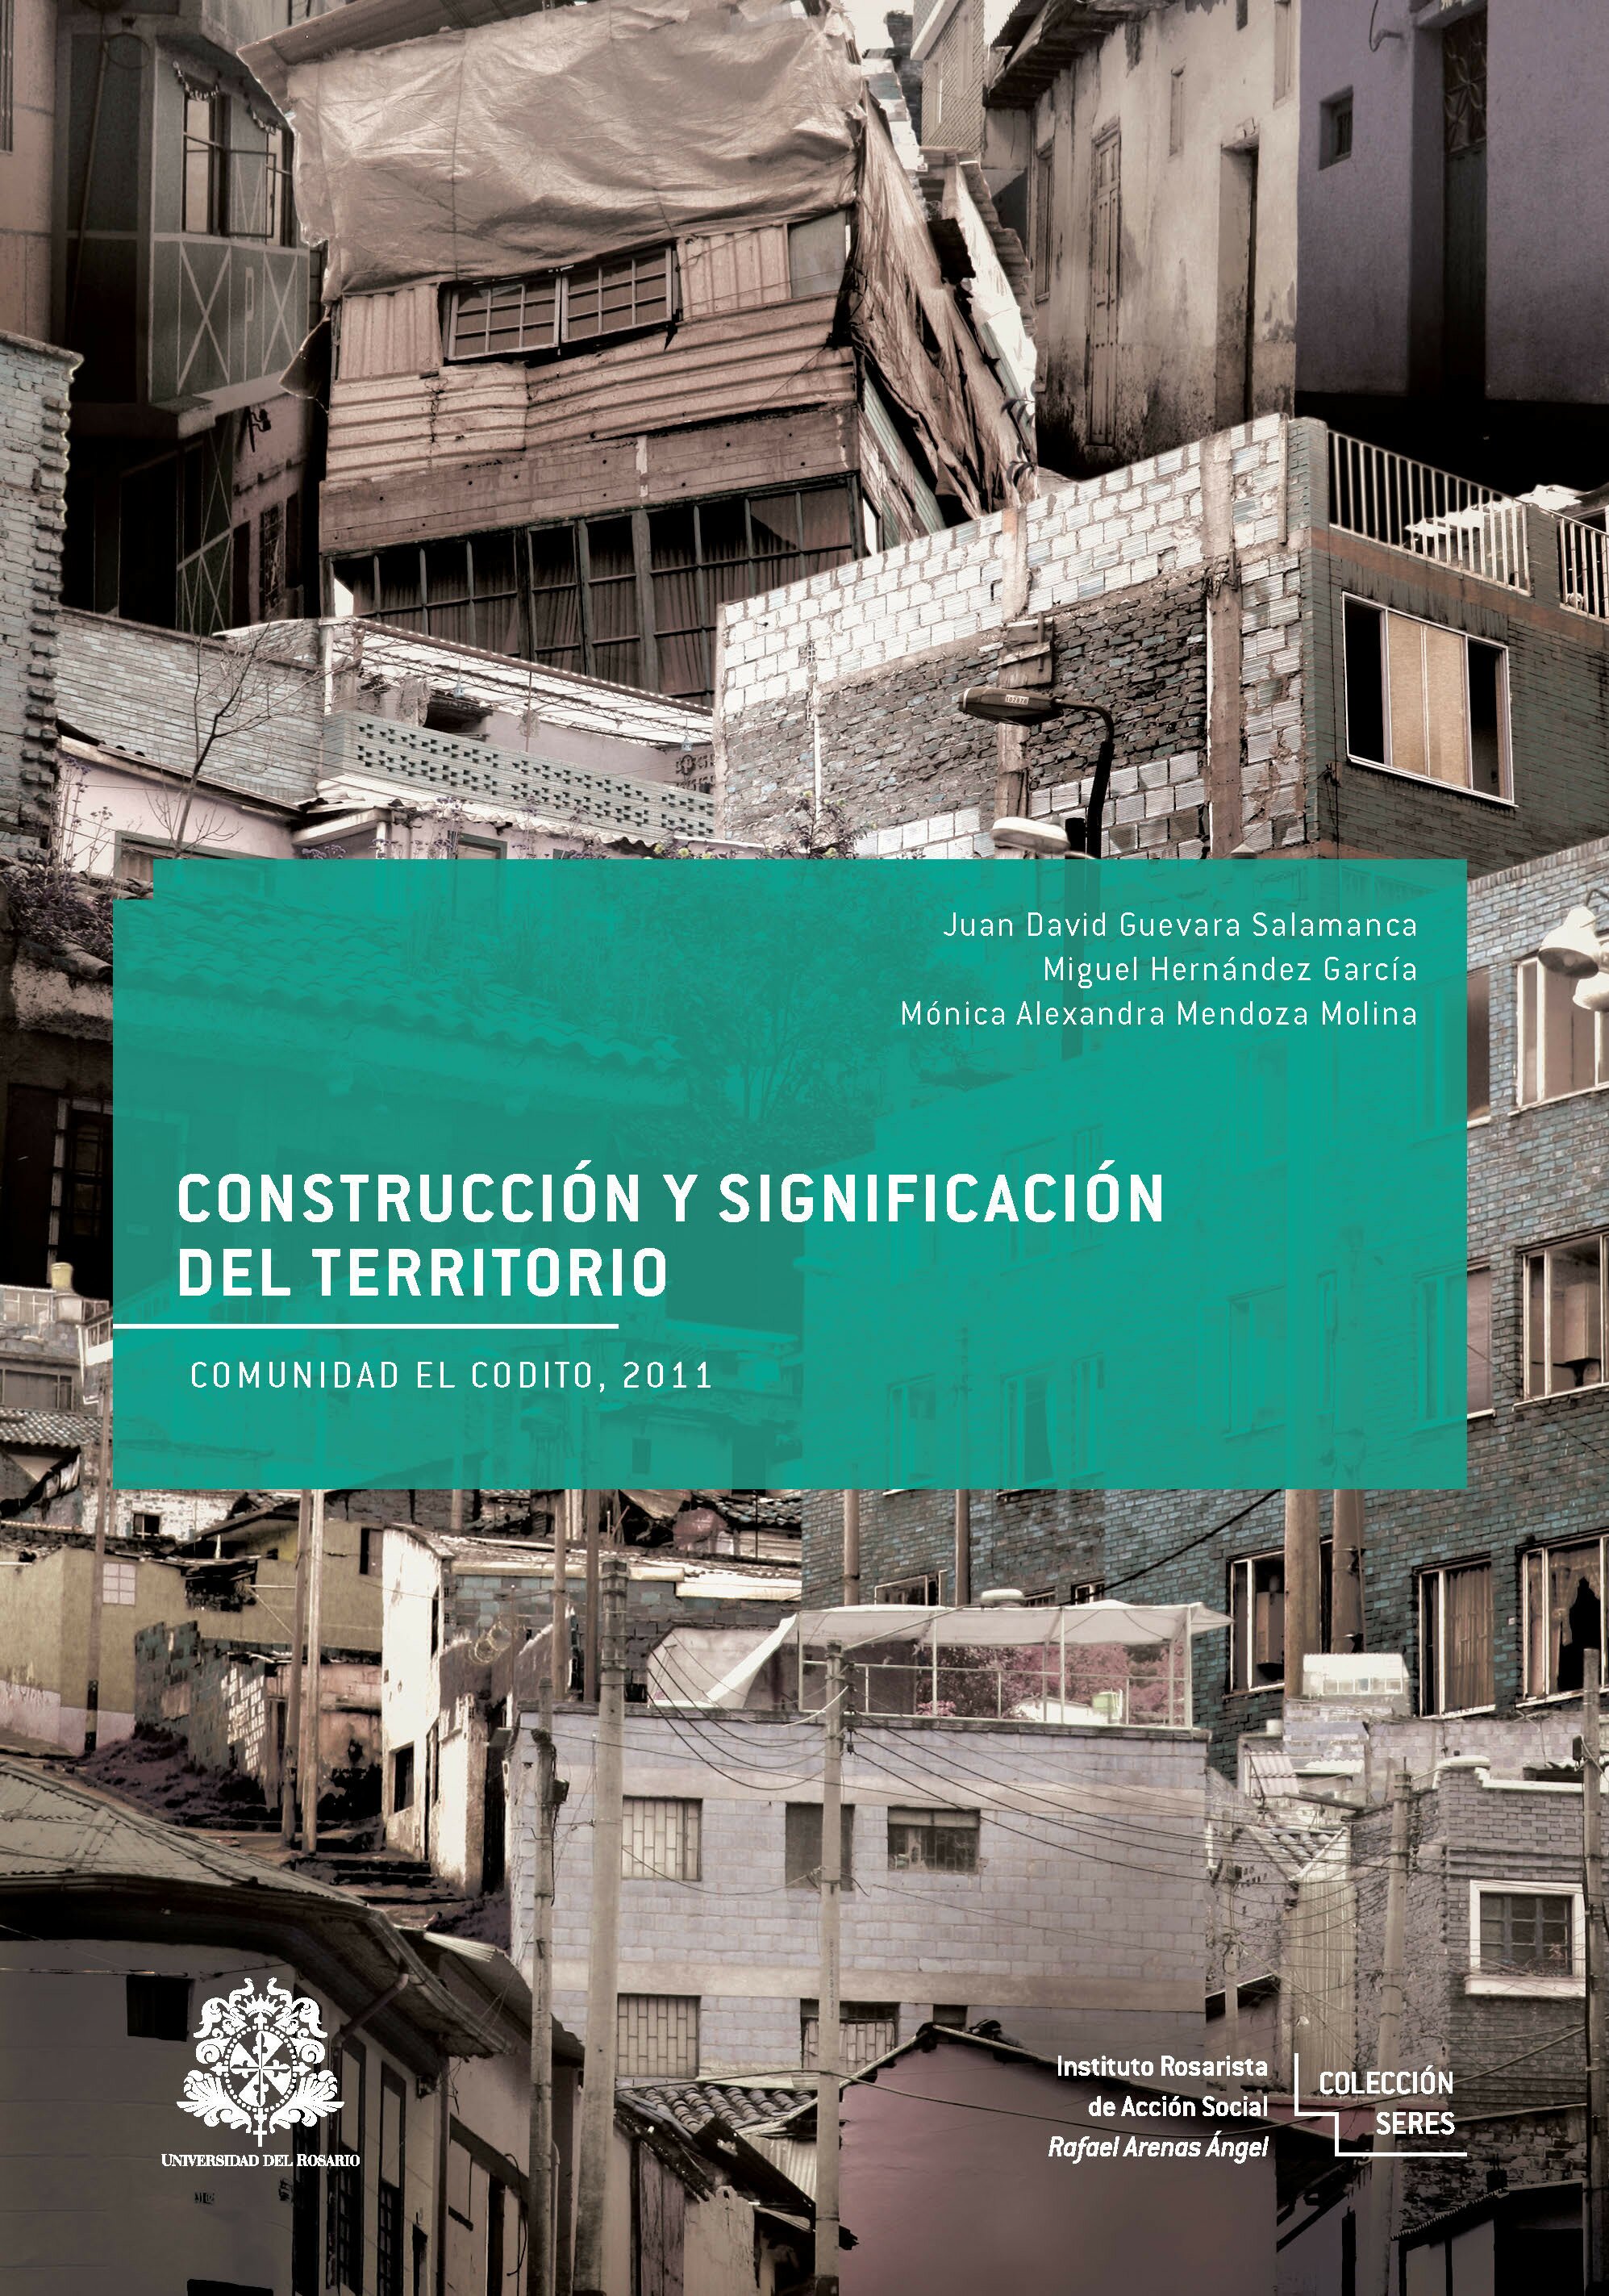  Construcción y significación del territorio. Comunidad El Codito, 2011